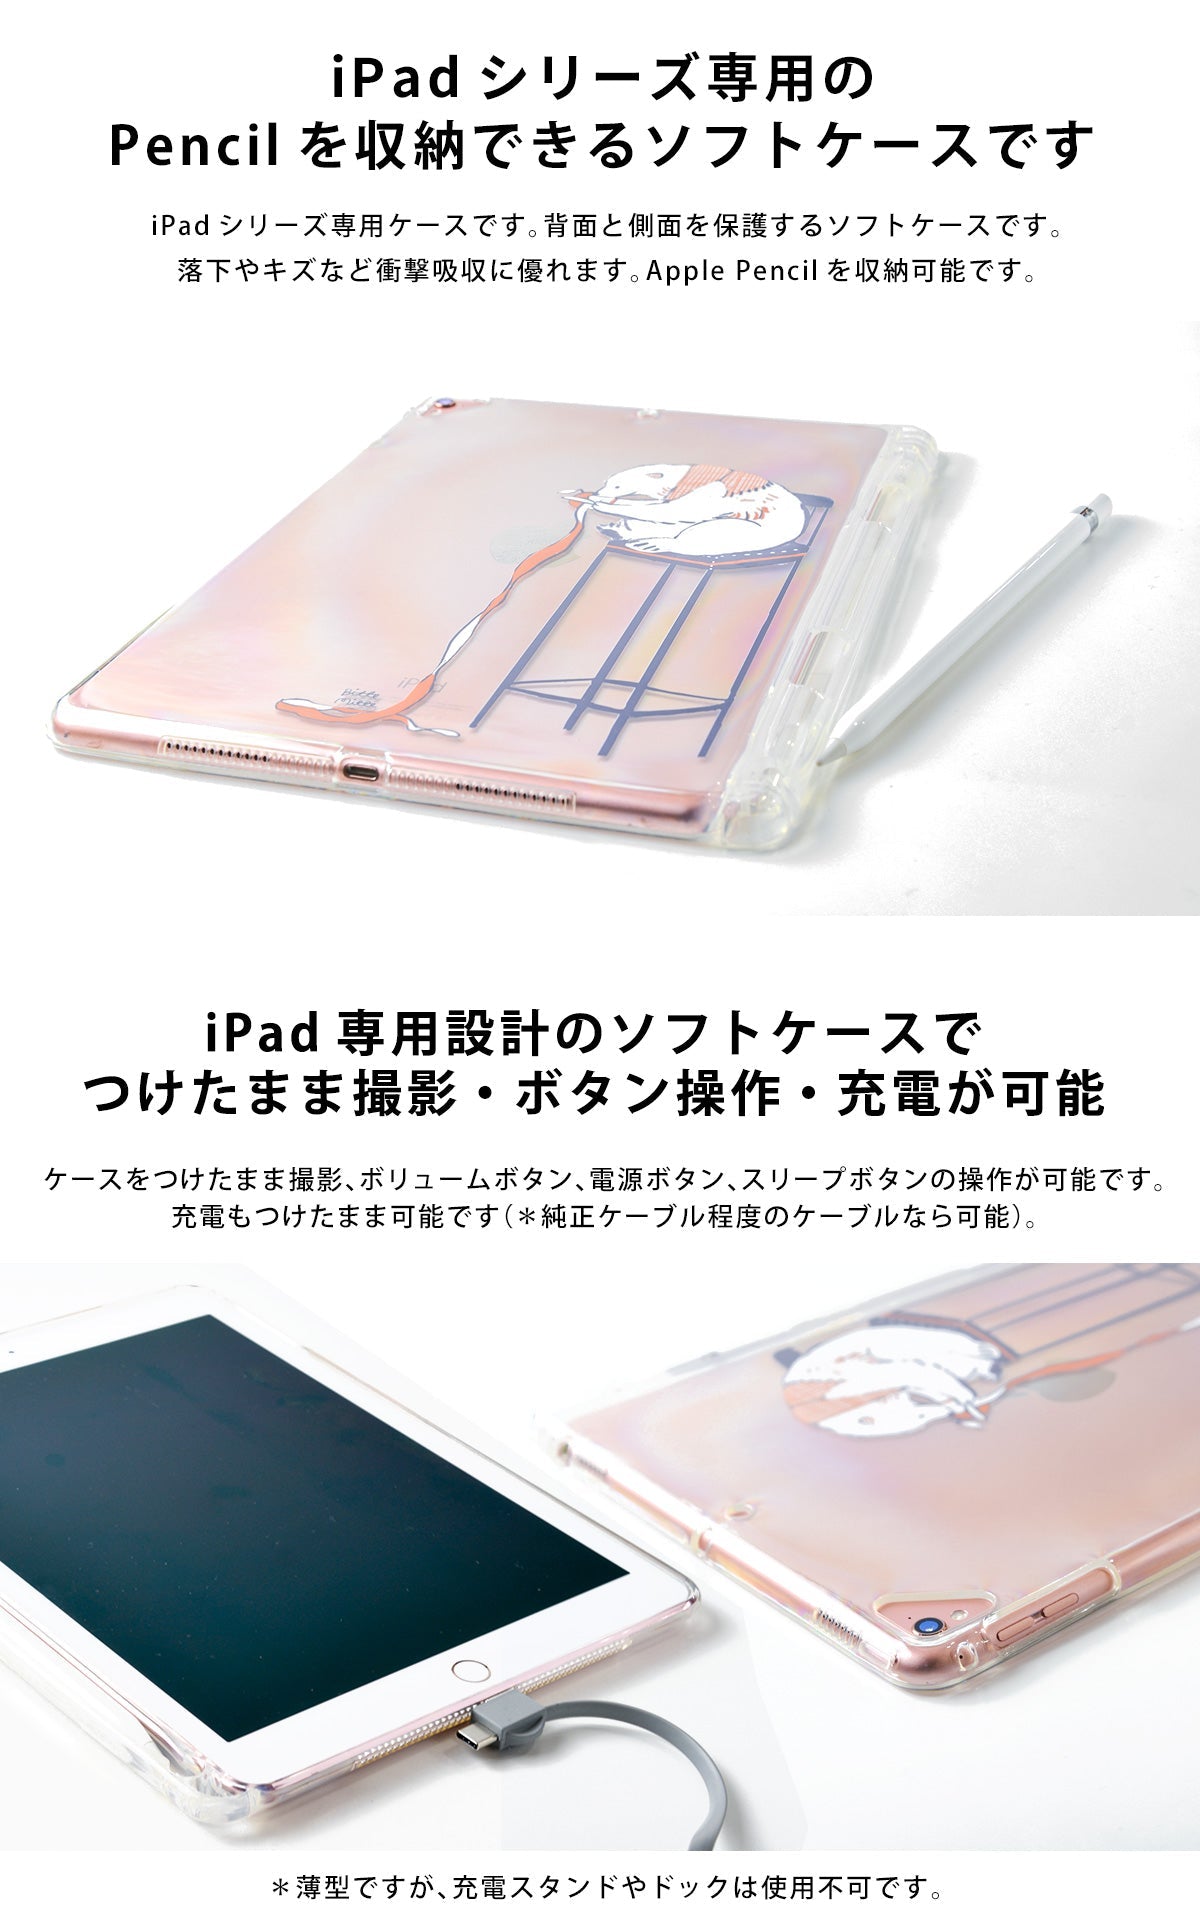 iPad専用クリアケースはiPadの背面と側面を保護するソフトケース。